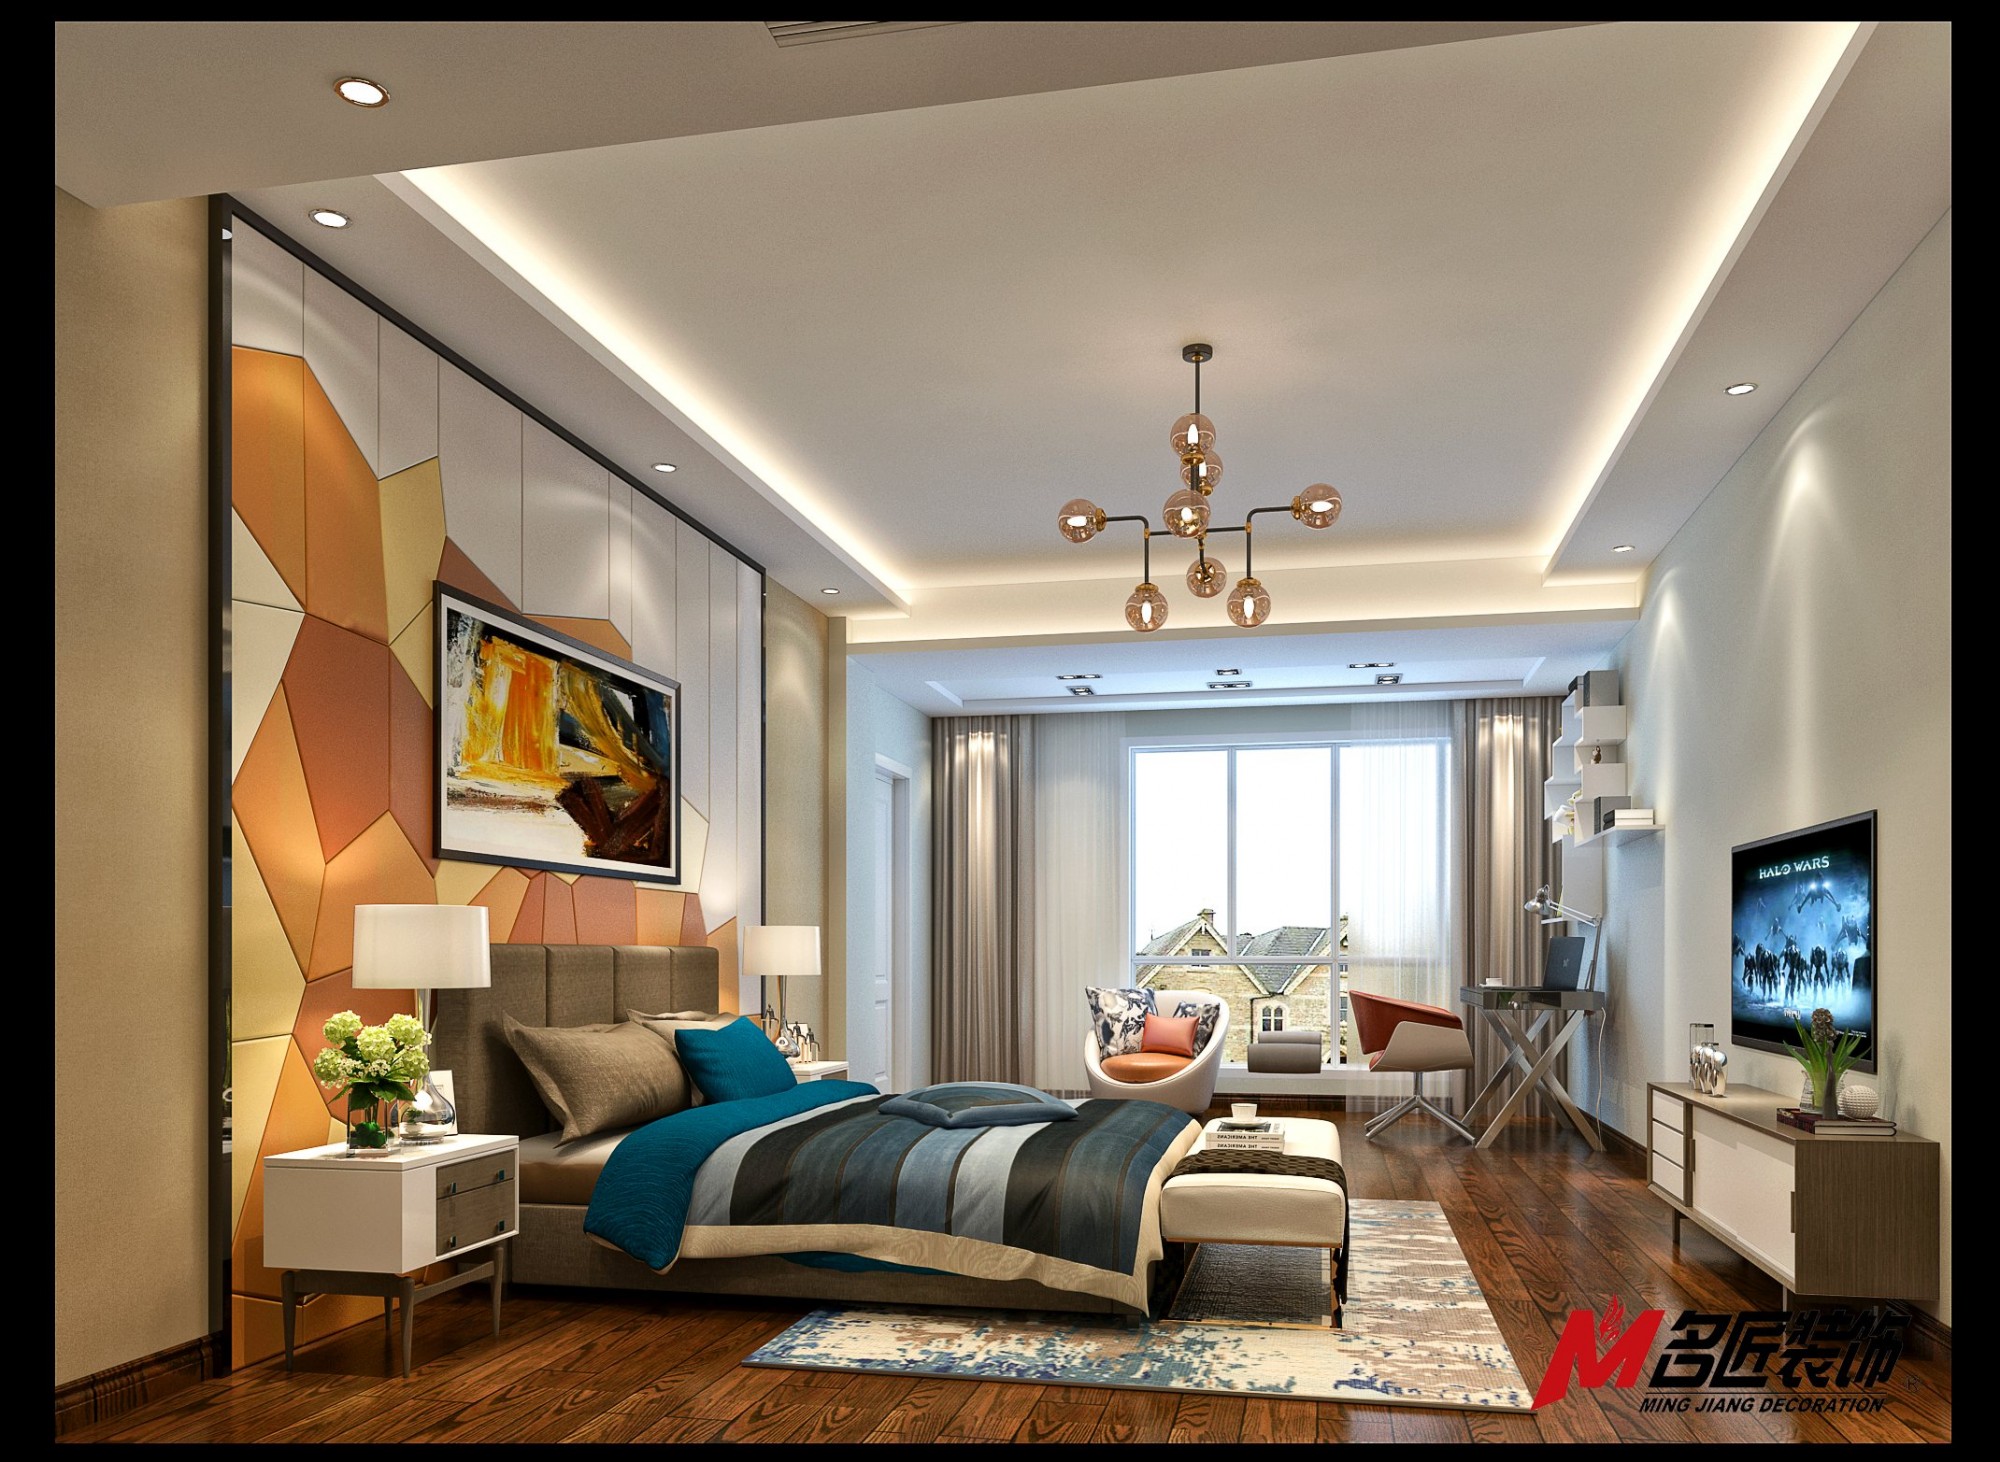 新中式风格别墅装修效果图-景和人家别墅265平米